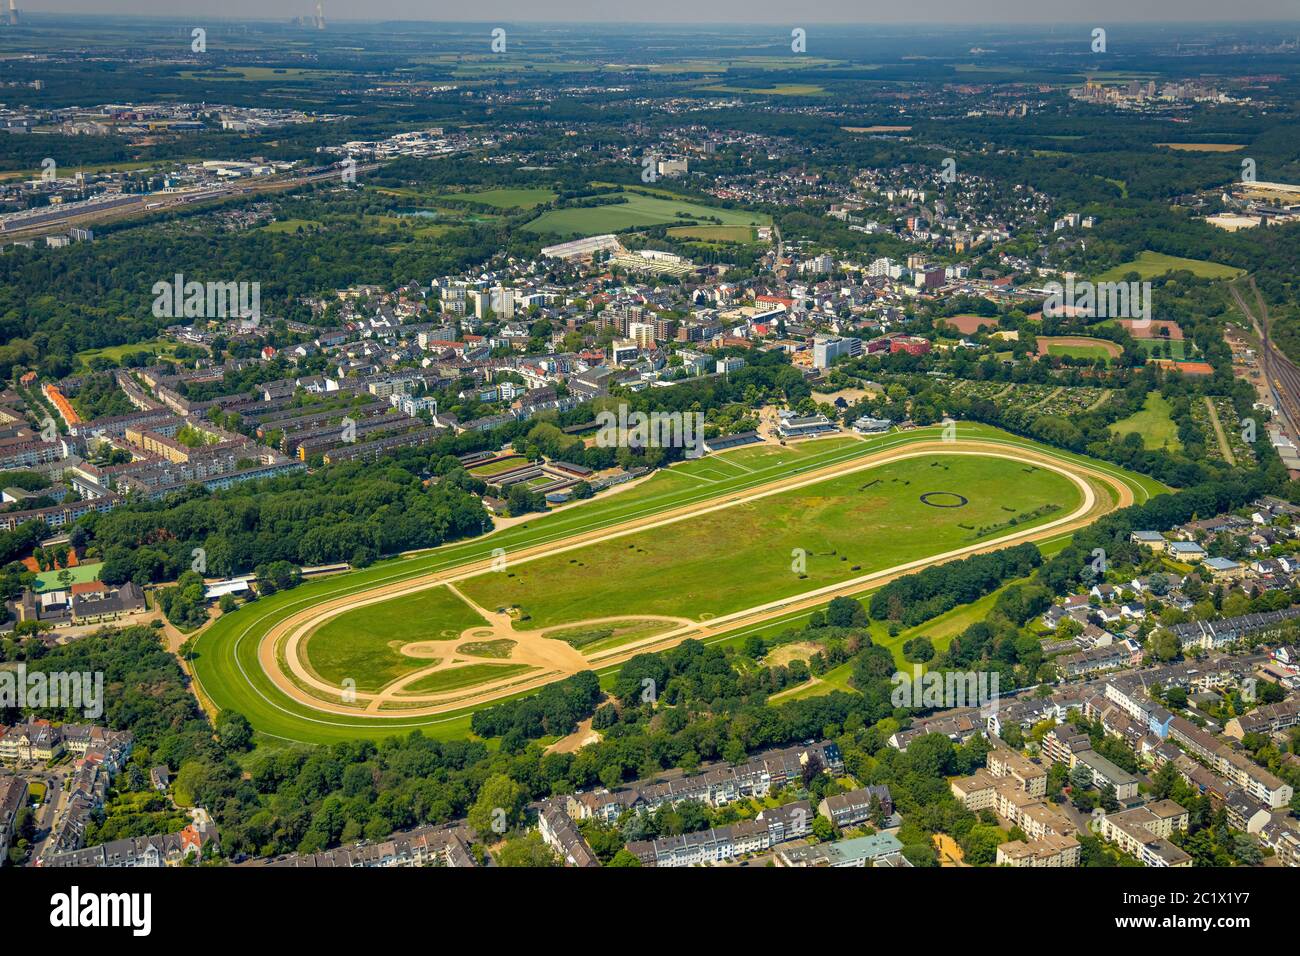 hipódromo de Colonia, Galopprennbahn Koeln-Weidenpesch, 05.06.2020, vista aérea, Alemania, Renania del Norte-Westfalia, Renania, Colonia Foto de stock